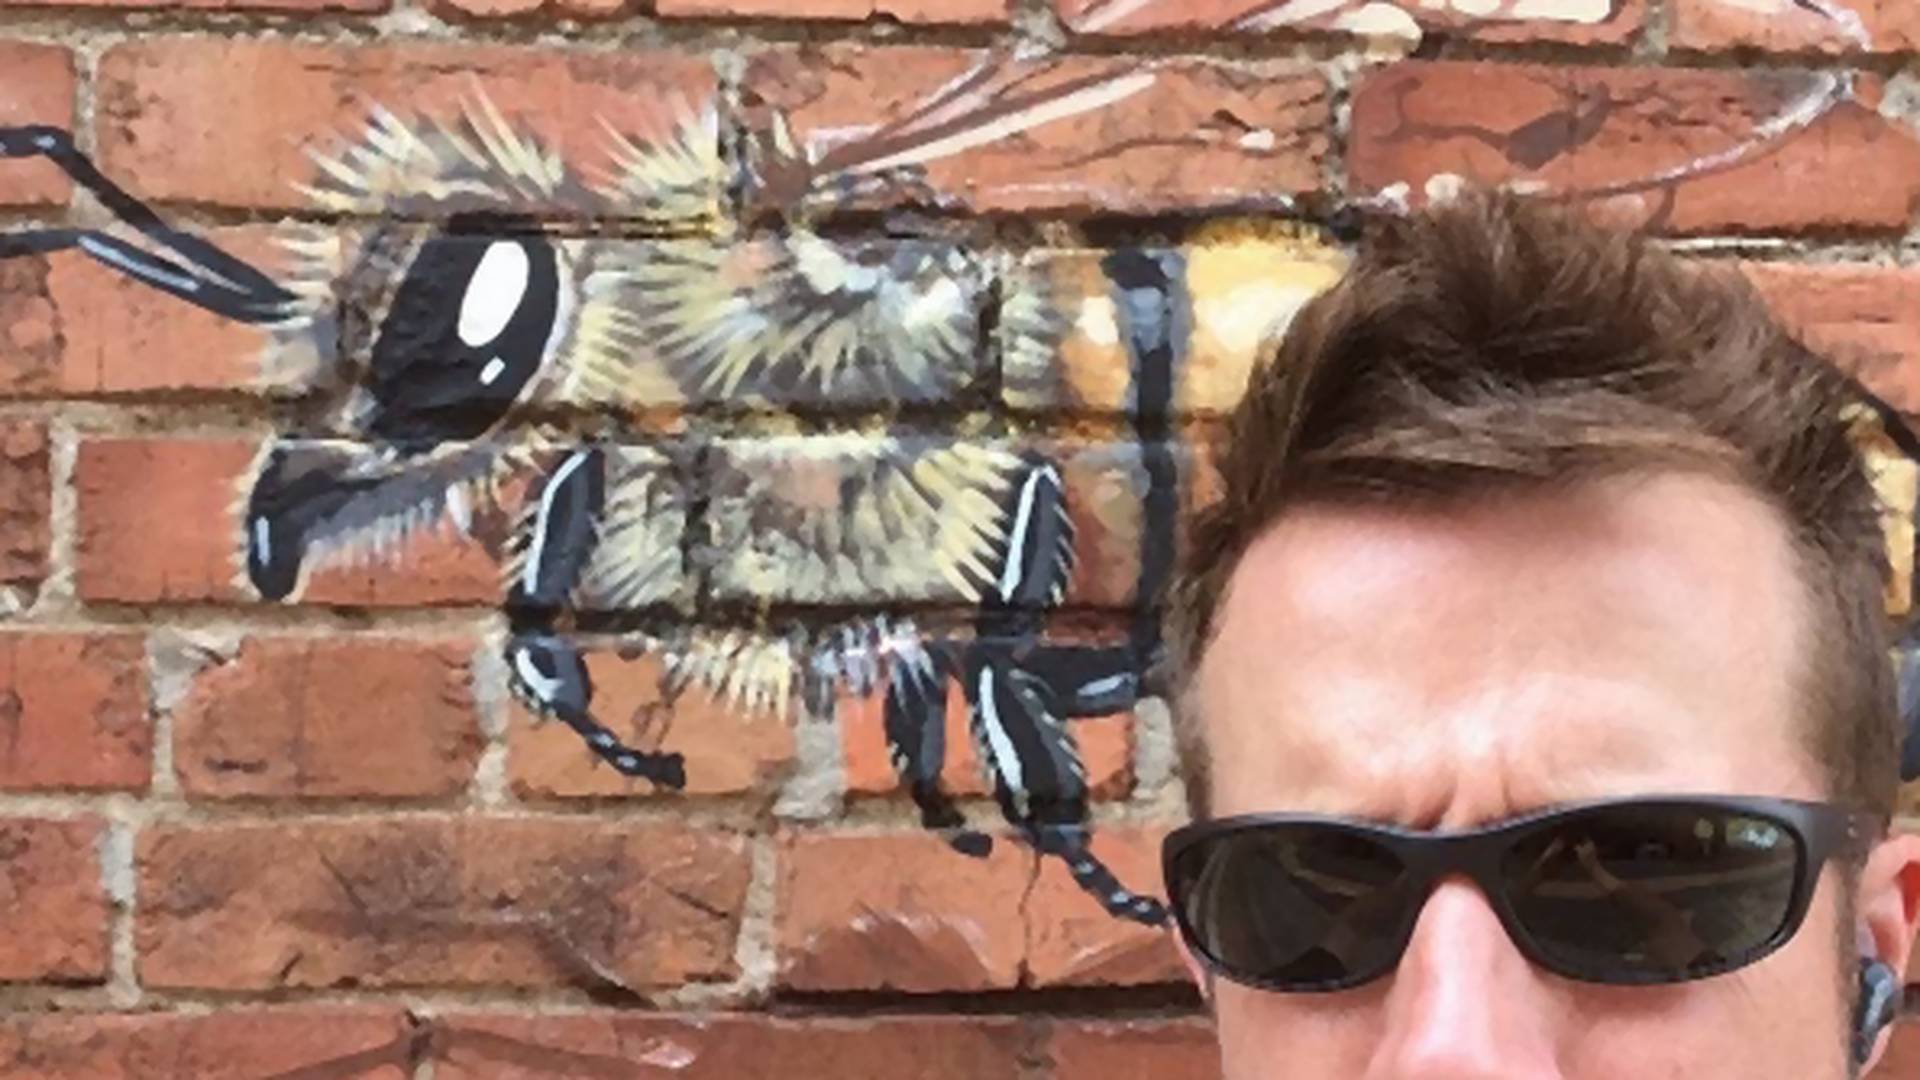 Umetnik putuje po svetu da bi slikao pčele po zidovima